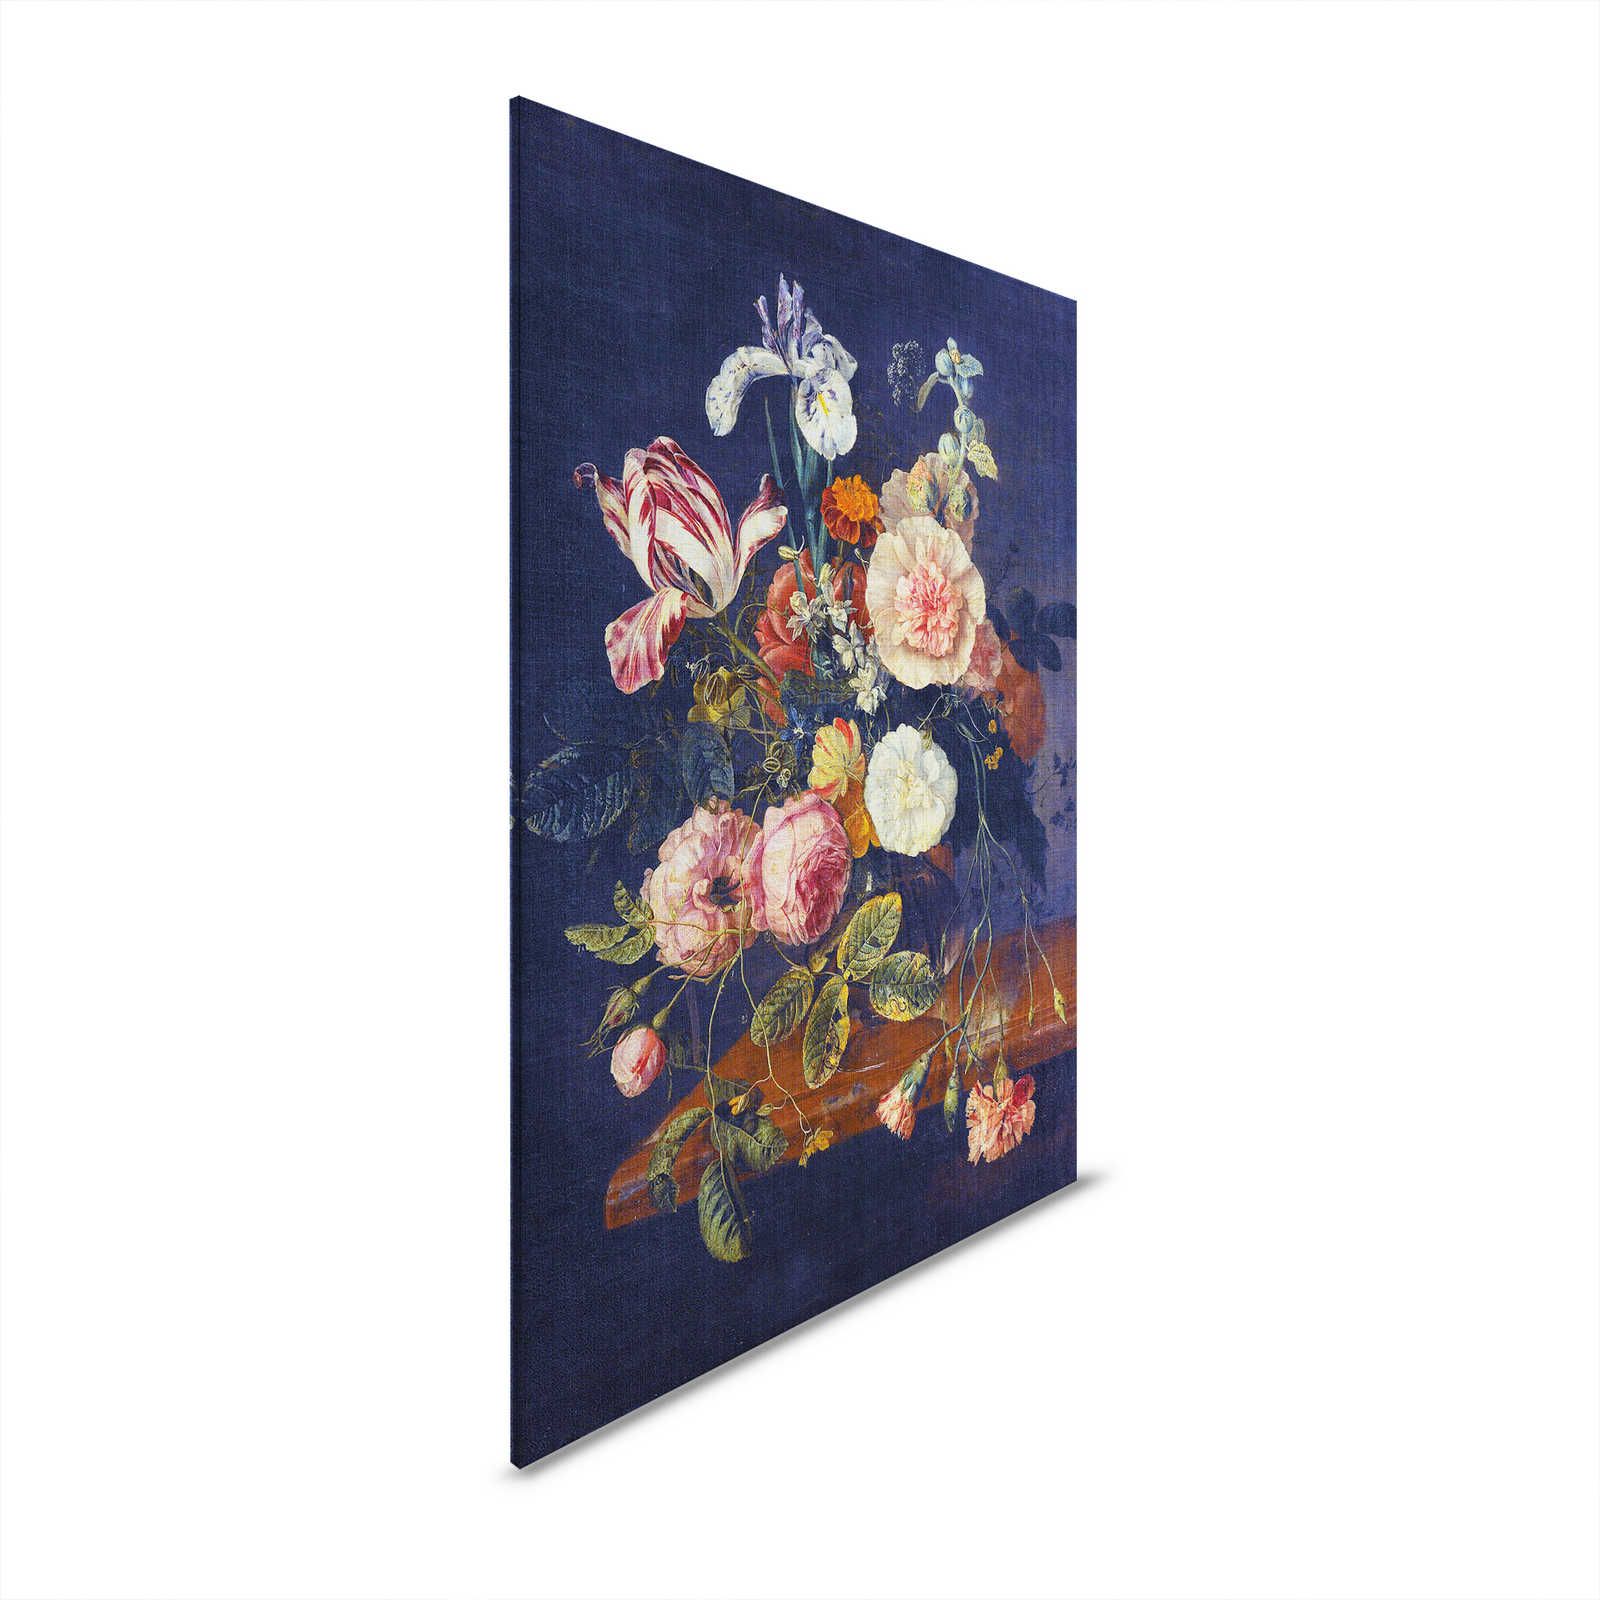 Artists Studio 1 - Quadro su tela Fiori Natura Morta Blu Scuro - 0,80 m x 1,20 m
